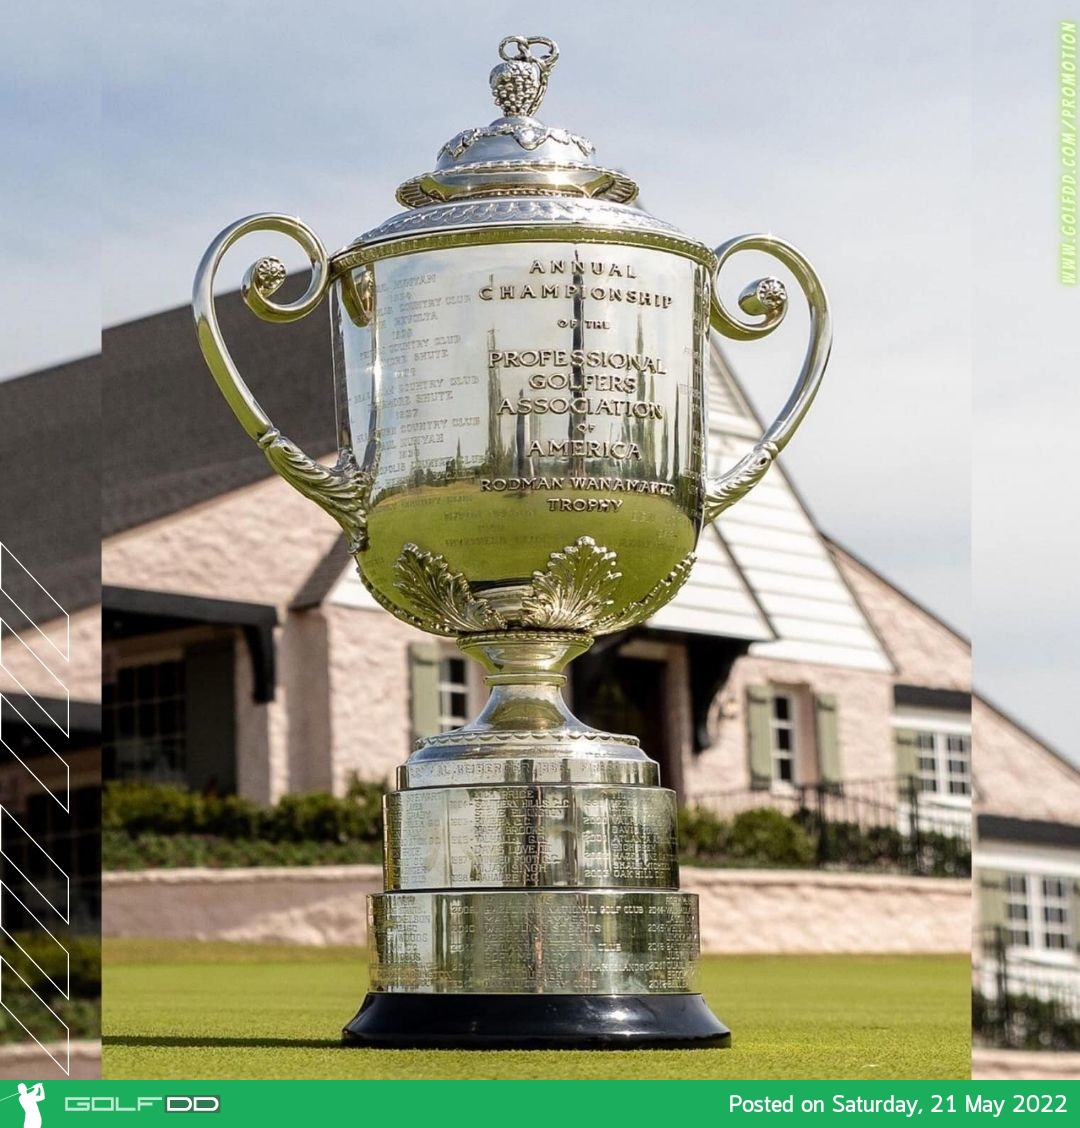 แชมป์กอล์ฟเมเจอร์ PGA Championship 2022 จะได้รับเงินรางวัล 2.16 ล้านเหรียญฯ 